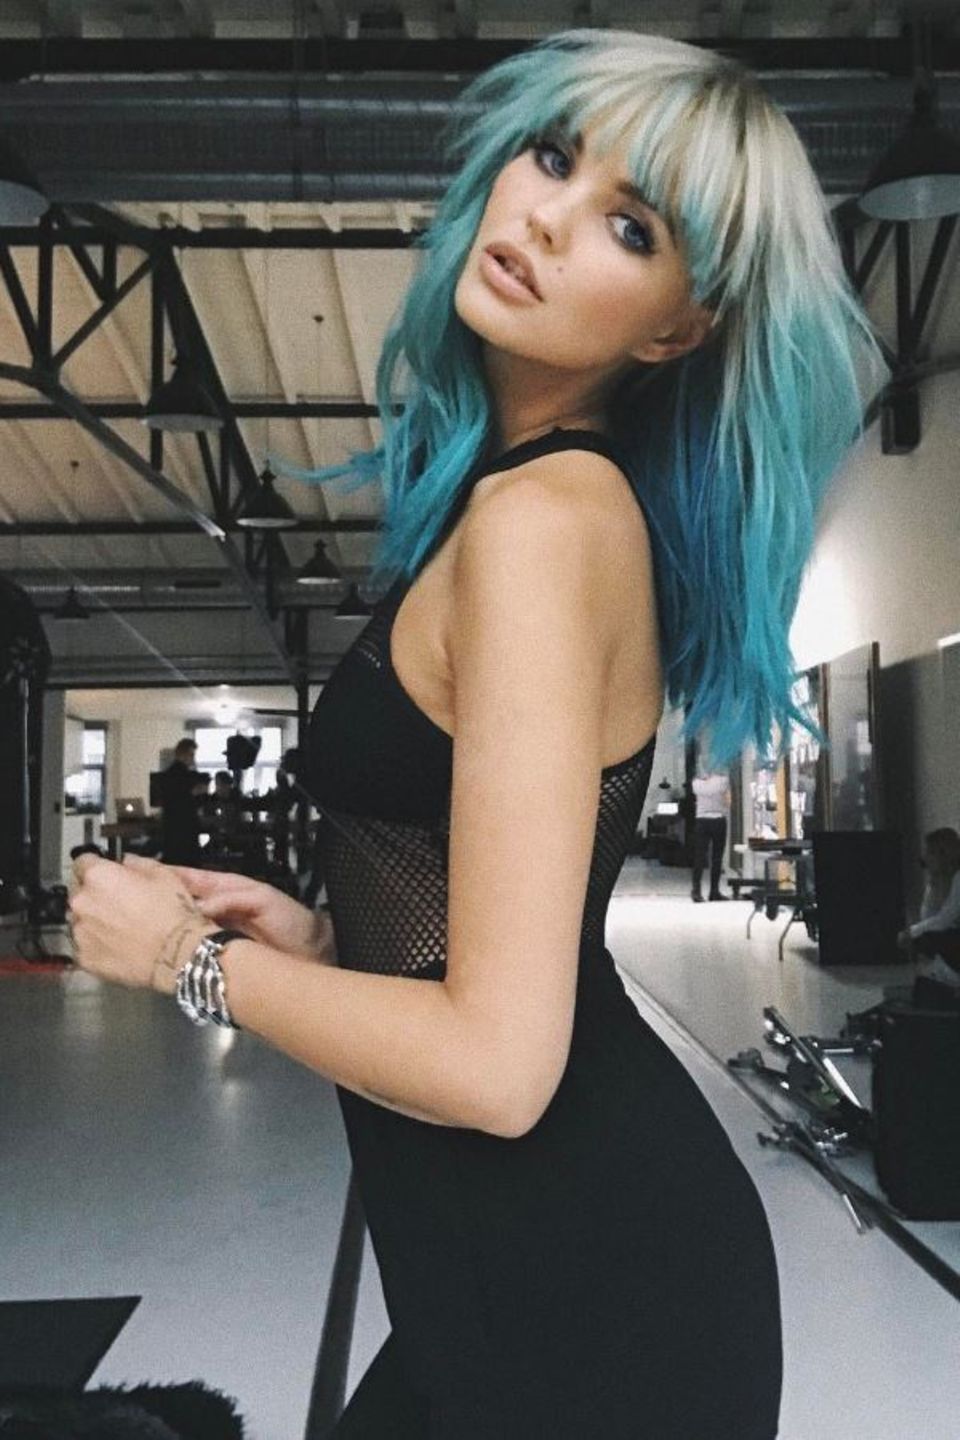 Auch Modelkollegin Bonnie Strange überrascht mit neuem Hairstyle, ihre Spitzen sind jetzt türkis-blau.